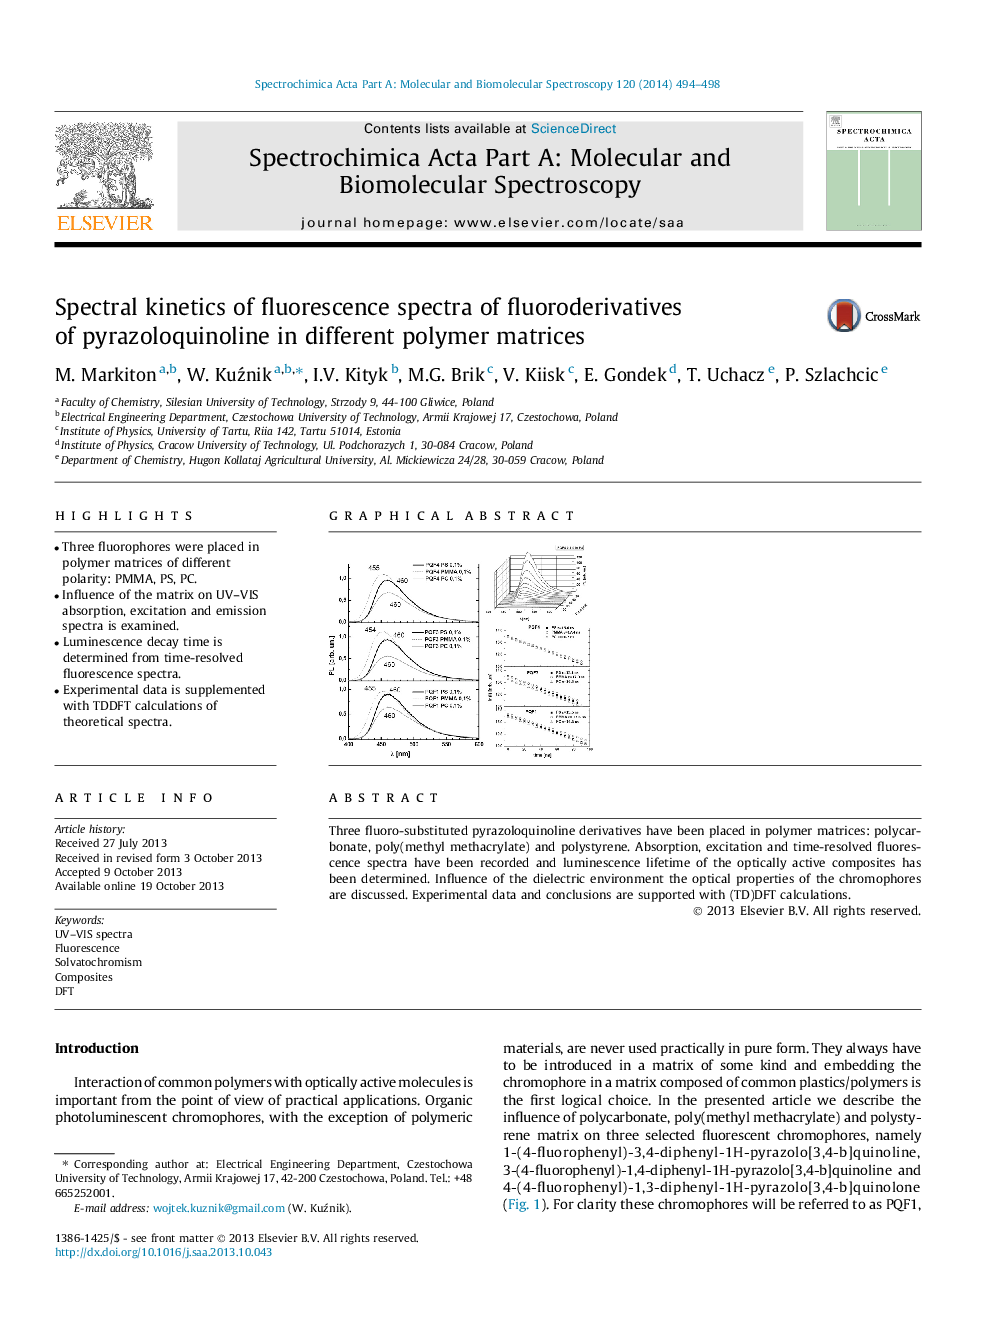 سینتیک طیفی طیف فلورسانس فلوئوردریاویدهای پریازولووینولین در ماتریسهای پلیمری مختلف 